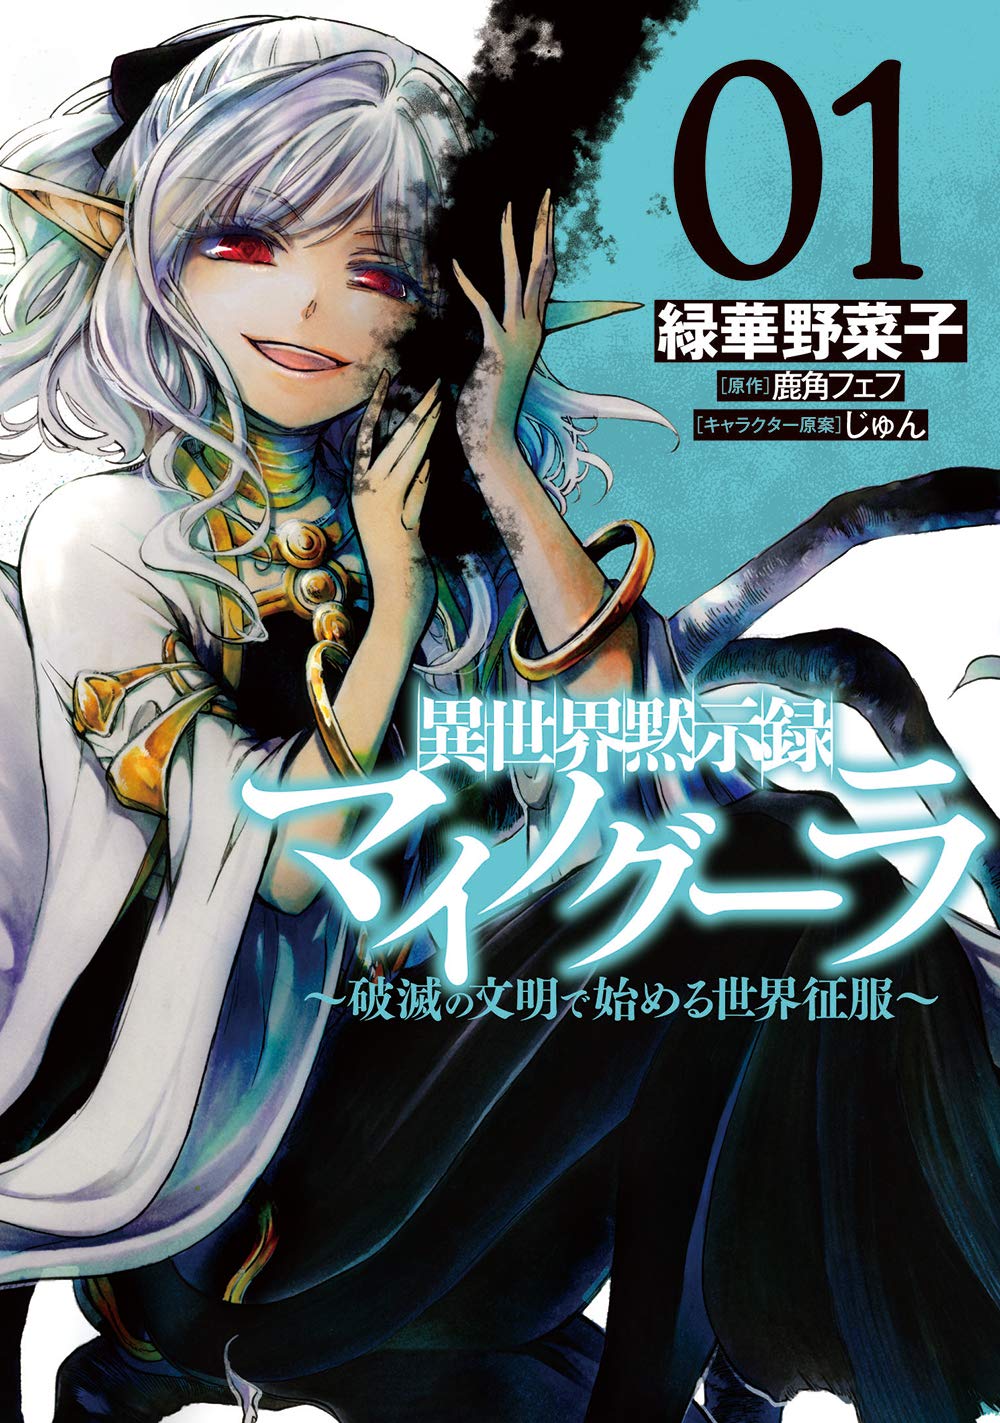 Koi wa Sekai Seifuku 7  Anime, Comic books art, Anime comics